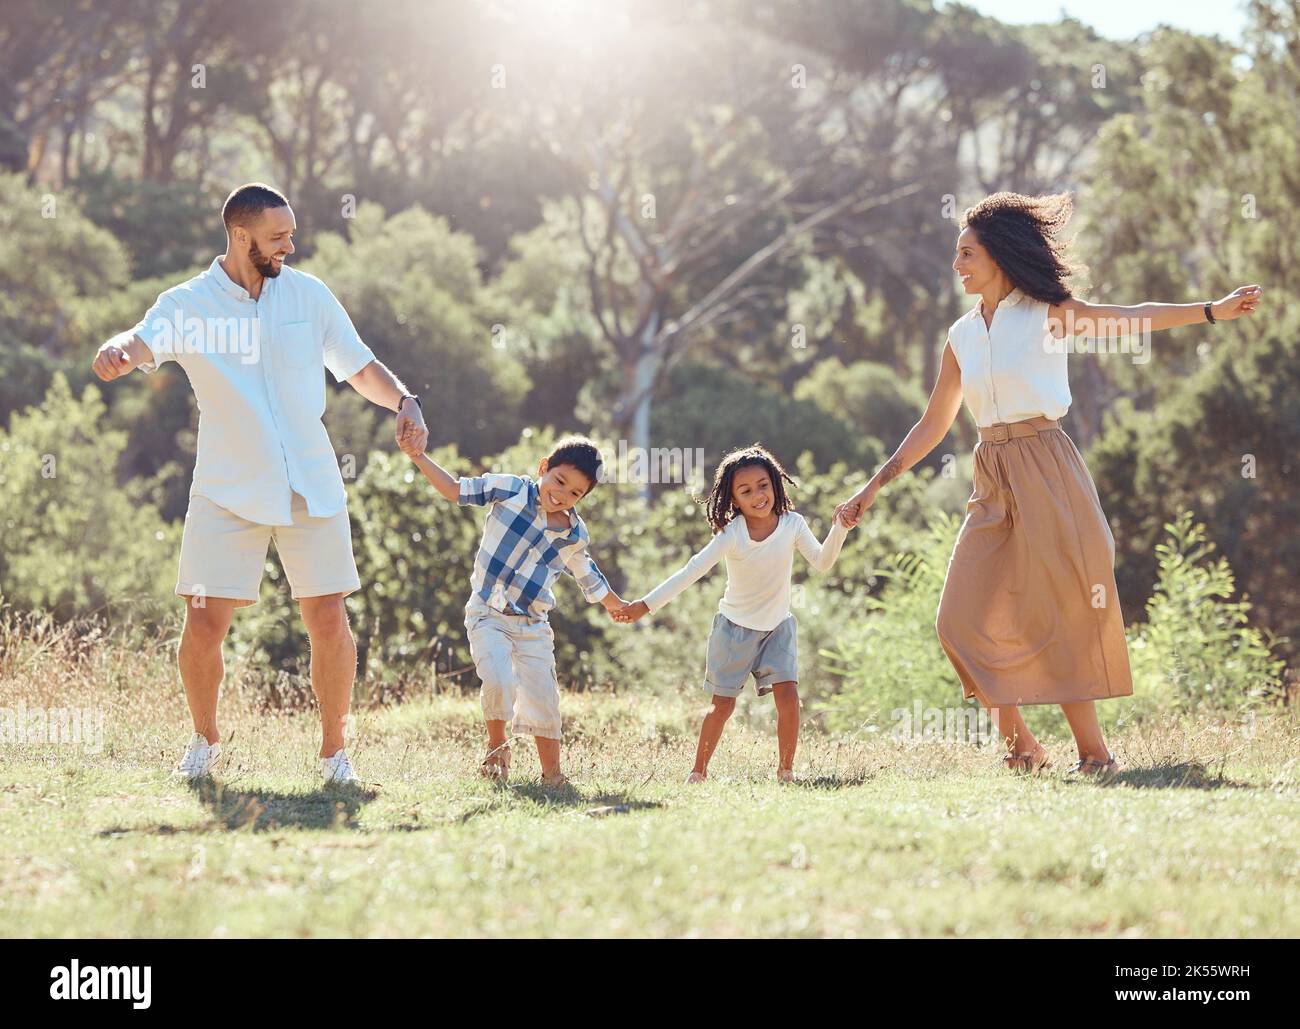 Freiheit, glückliche Familie und Spaß in einem Park mit schwarzen Kindern und Eltern, die sich auf dem Rasen verbinden und spielen. Liebe, Energie und Kinder aufgeregt und glücklich, während Stockfoto